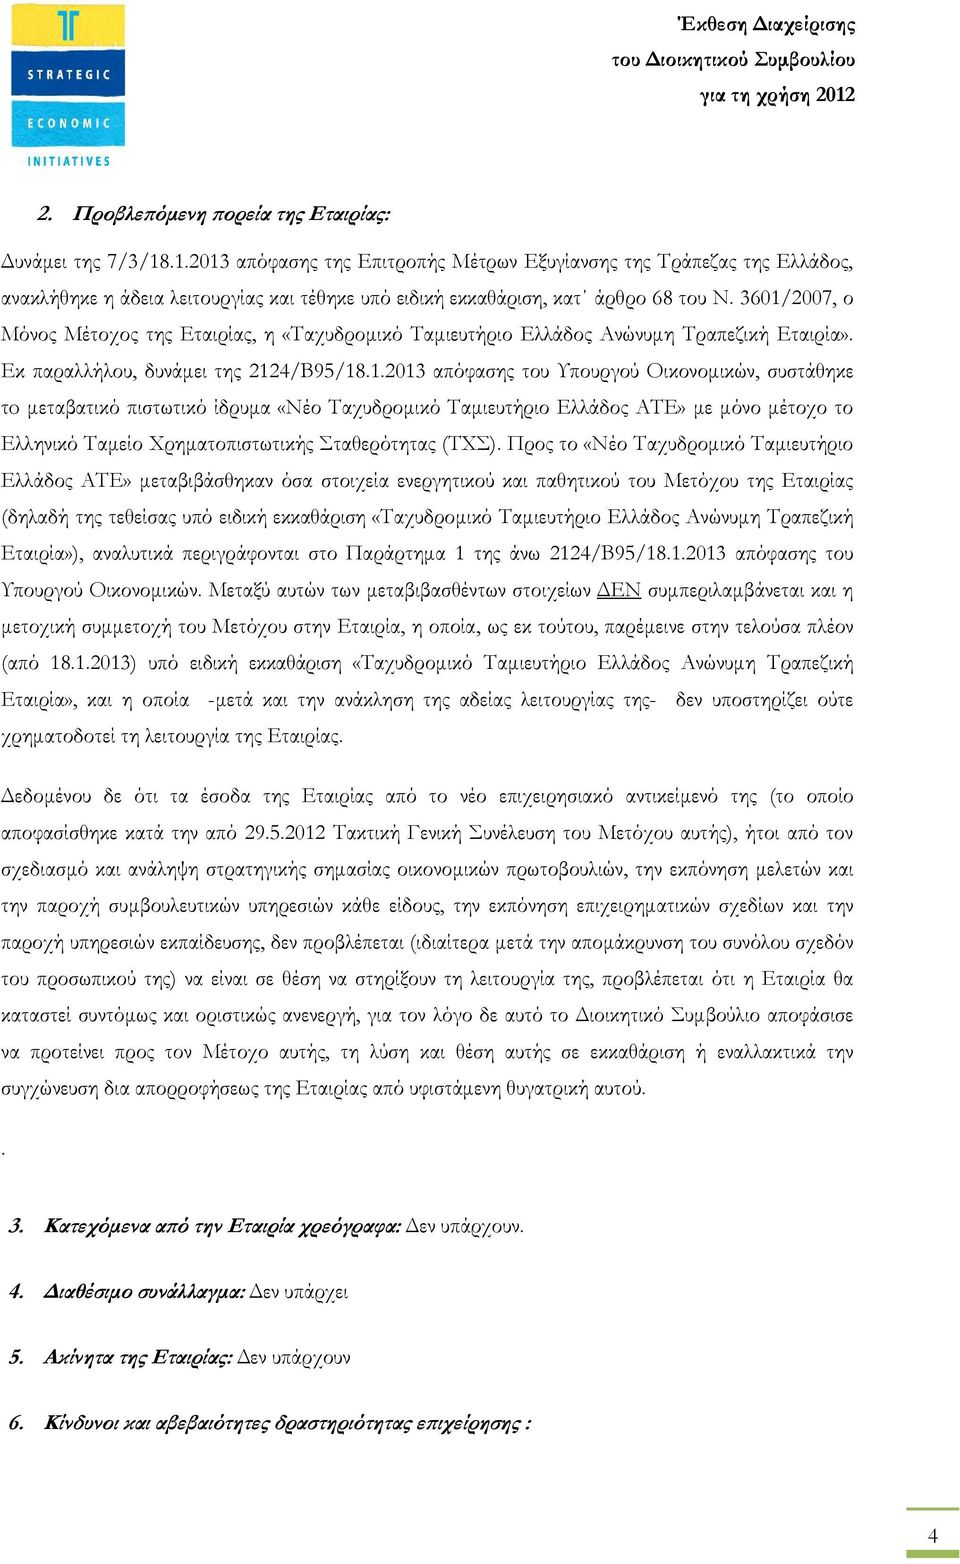 3601/2007, ο Μόνος Μέτοχος της Εταιρίας, η «Ταχυδροµικό Ταµιευτήριο Ελλάδος Ανώνυµη Τραπεζική Εταιρία». Εκ παραλλήλου, δυνάµει της 2124/Β95/18.1.2013 απόφασης του Υπουργού Οικονοµικών, συστάθηκε τo µεταβατικό πιστωτικό ίδρυµα «Νέο Ταχυδροµικό Ταµιευτήριο Ελλάδος ΑΤΕ» µε µόνο µέτοχο το Ελληνικό Ταµείο Χρηµατοπιστωτικής Σταθερότητας (ΤΧΣ).